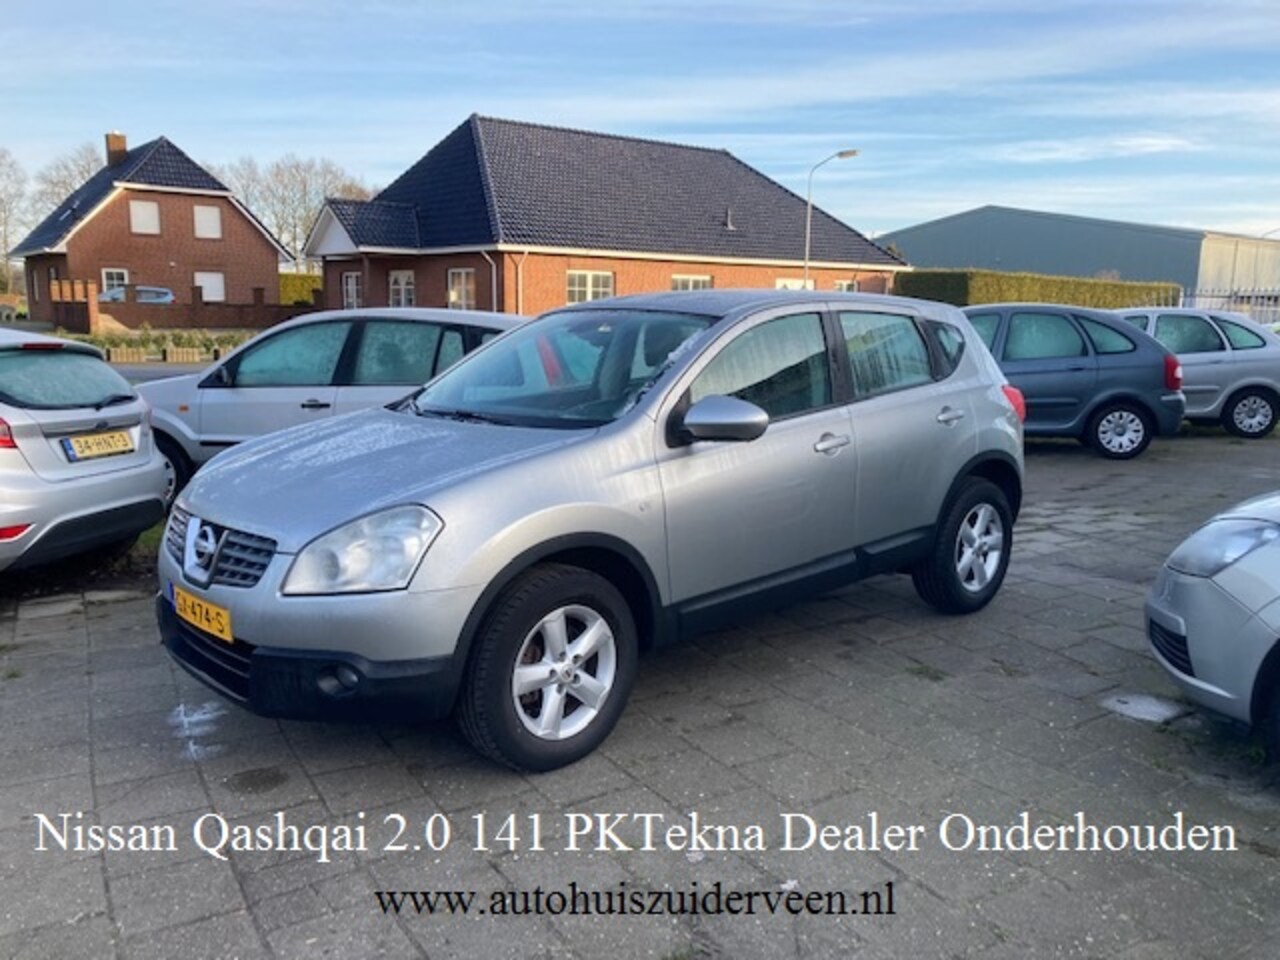 Nissan Qashqai - 2.0 Tekna 141/PK Dealer Onderhouden !!! - AutoWereld.nl